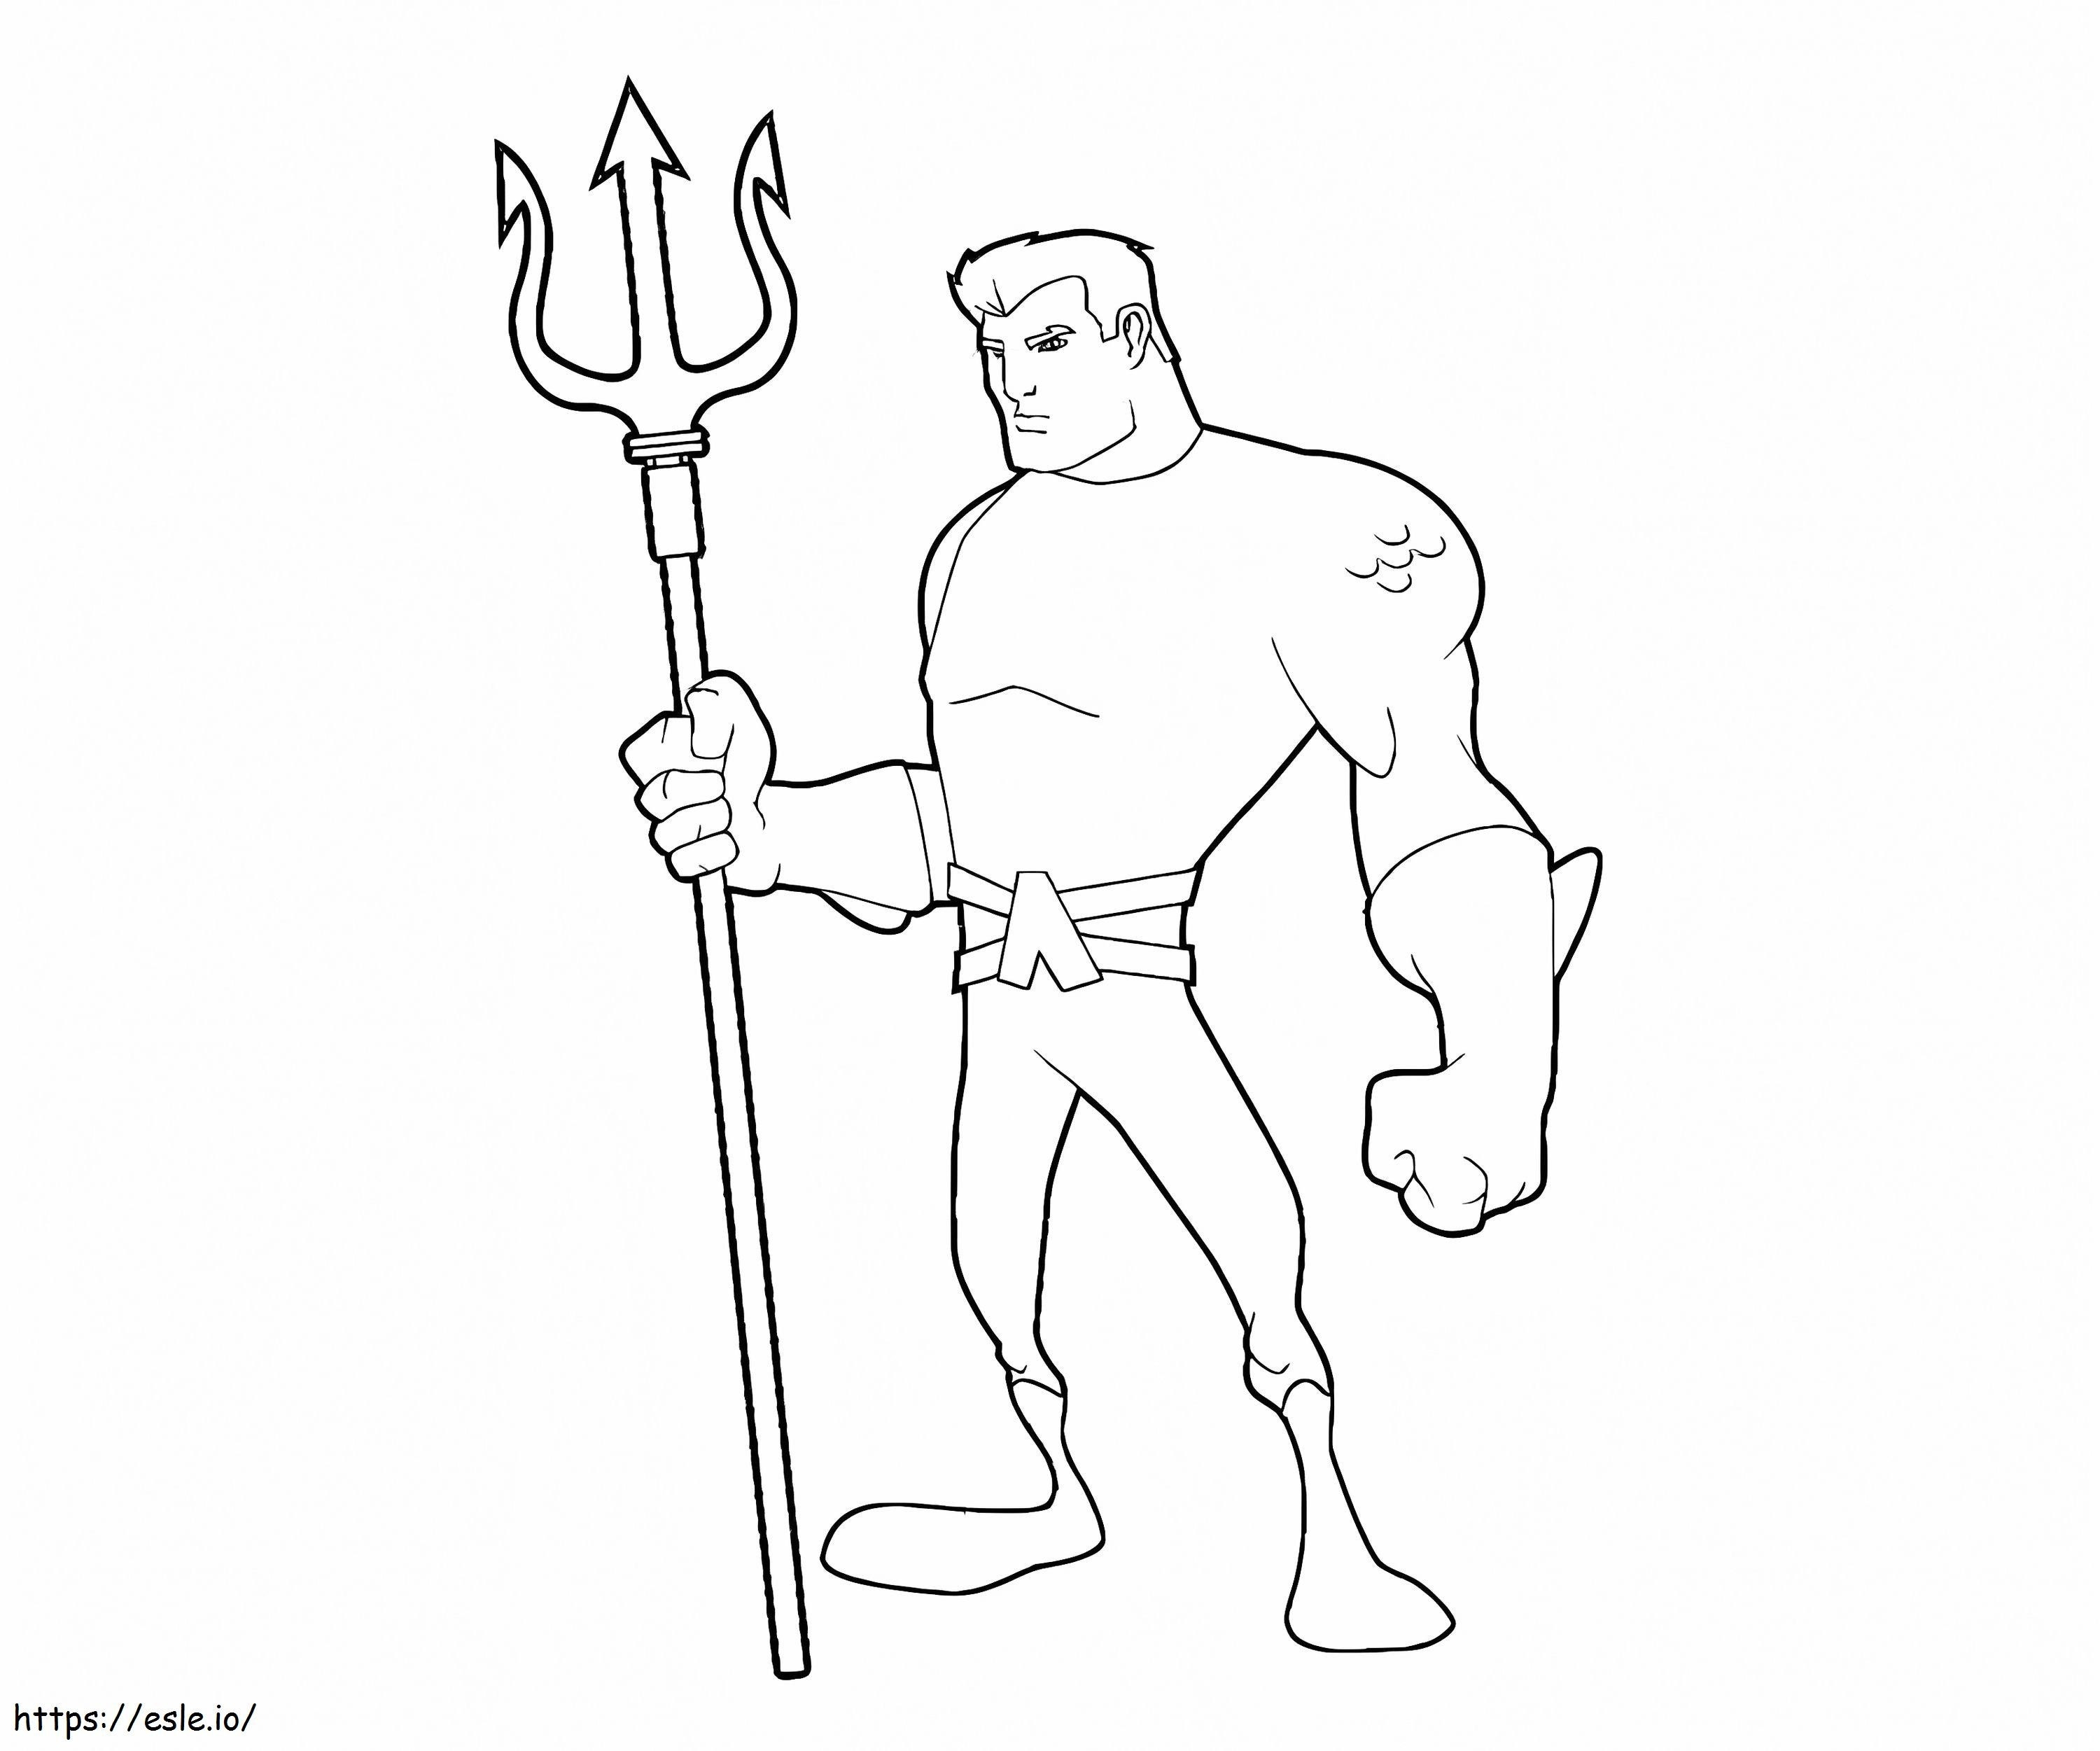 Cartoon Aquaman coloring page